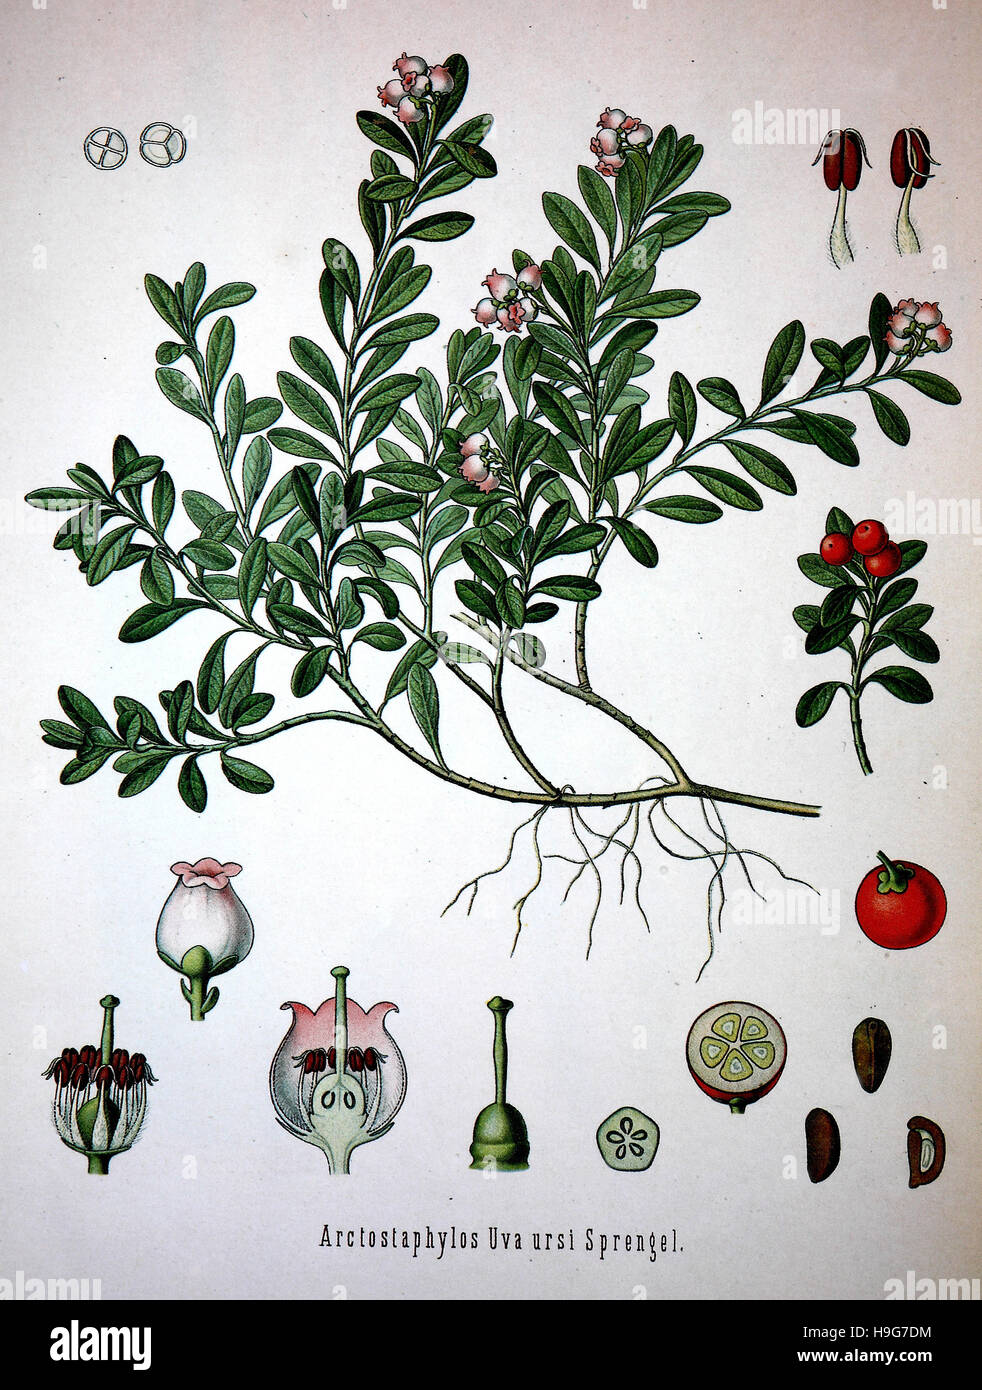 Arctostaphylos uva-ursi è una specie di piante del genere Arctostaphylo. I suoi nomi includono kinnikinnick e manzanita pinemat, e si tratta di una delle numerose specie correlate di cui al come uva ursina, pianta medicinale Foto Stock